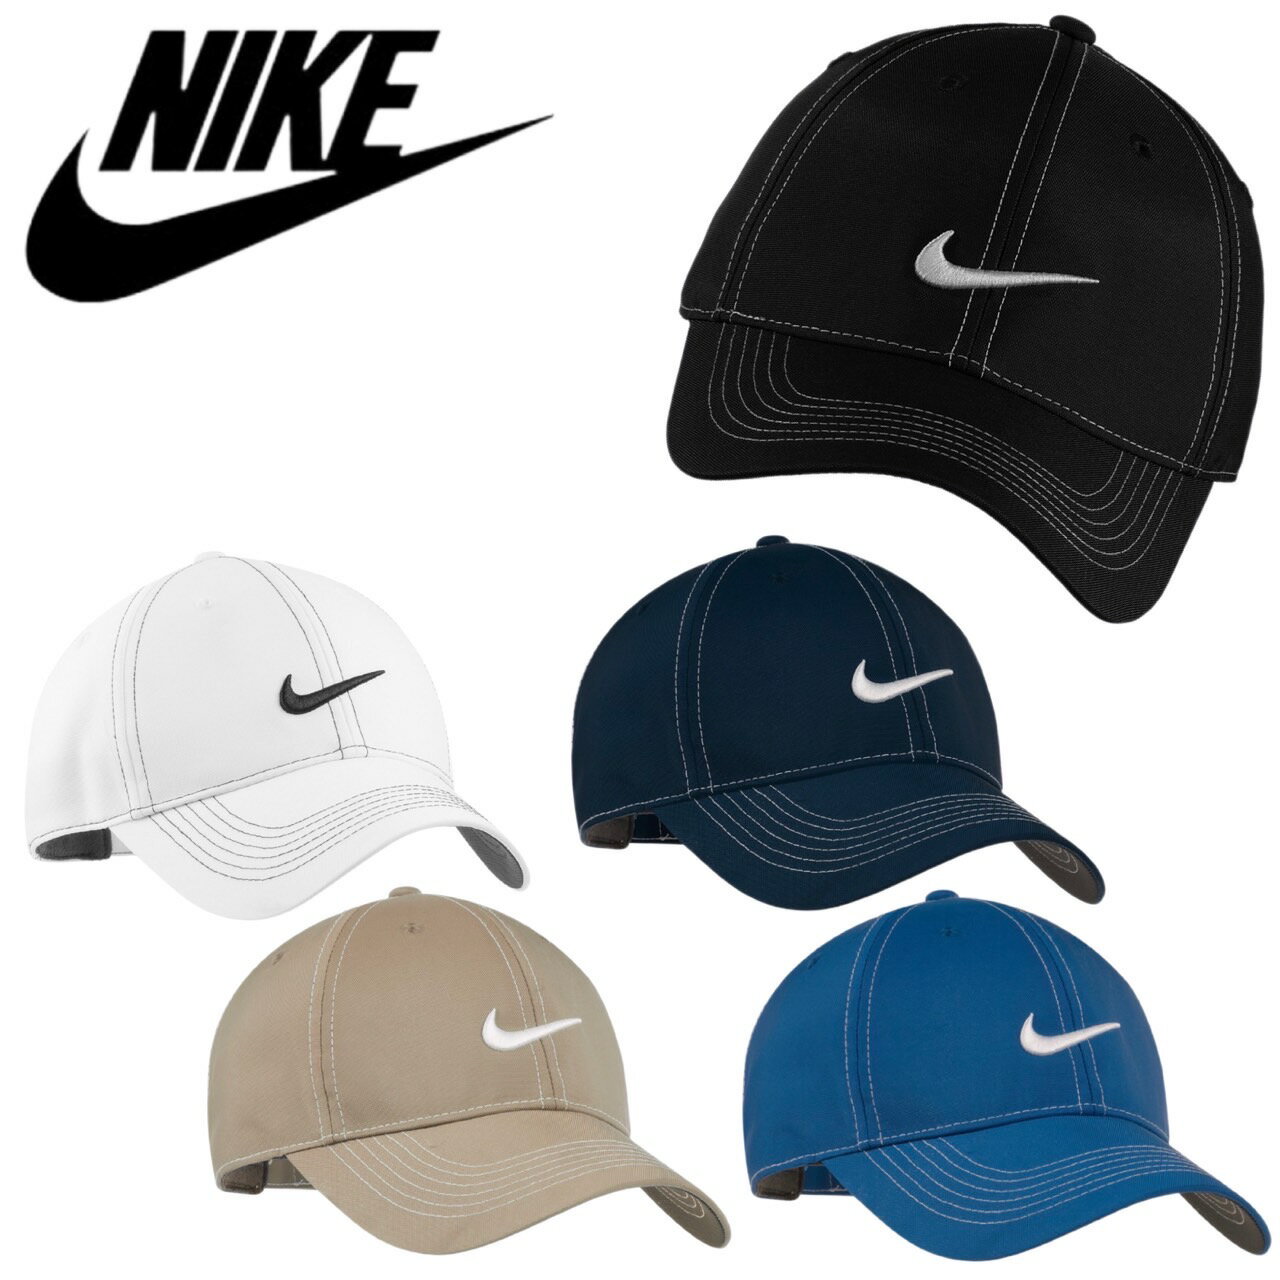 ナイキ キャップ メンズ ナイキ Nike キャップ 帽子 333114 刺繍ロゴ 全5色 ドライフィット 速乾 メンズ レディース スポーツ 紫外線対策 調節可 ヘリテージ86 NIKE SWOOSH FRONT CAP